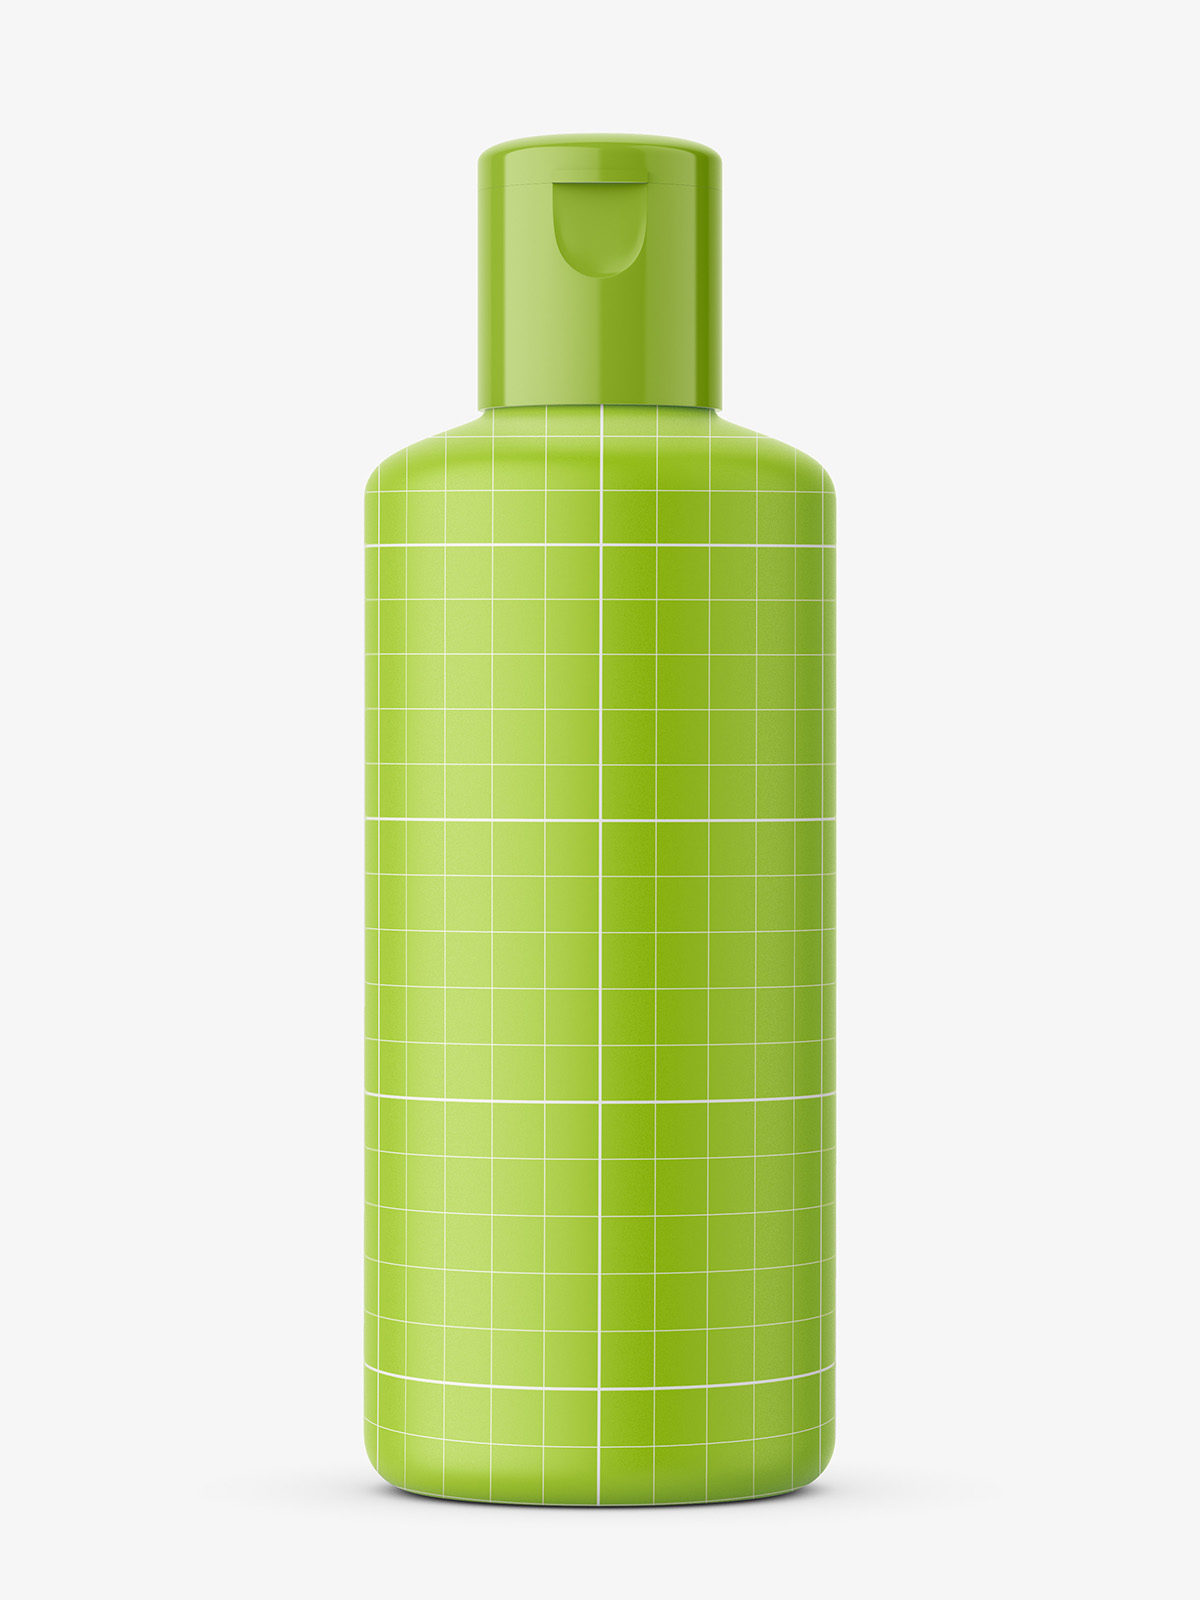 Matte plastic bottle mockup - Smarty Mockups